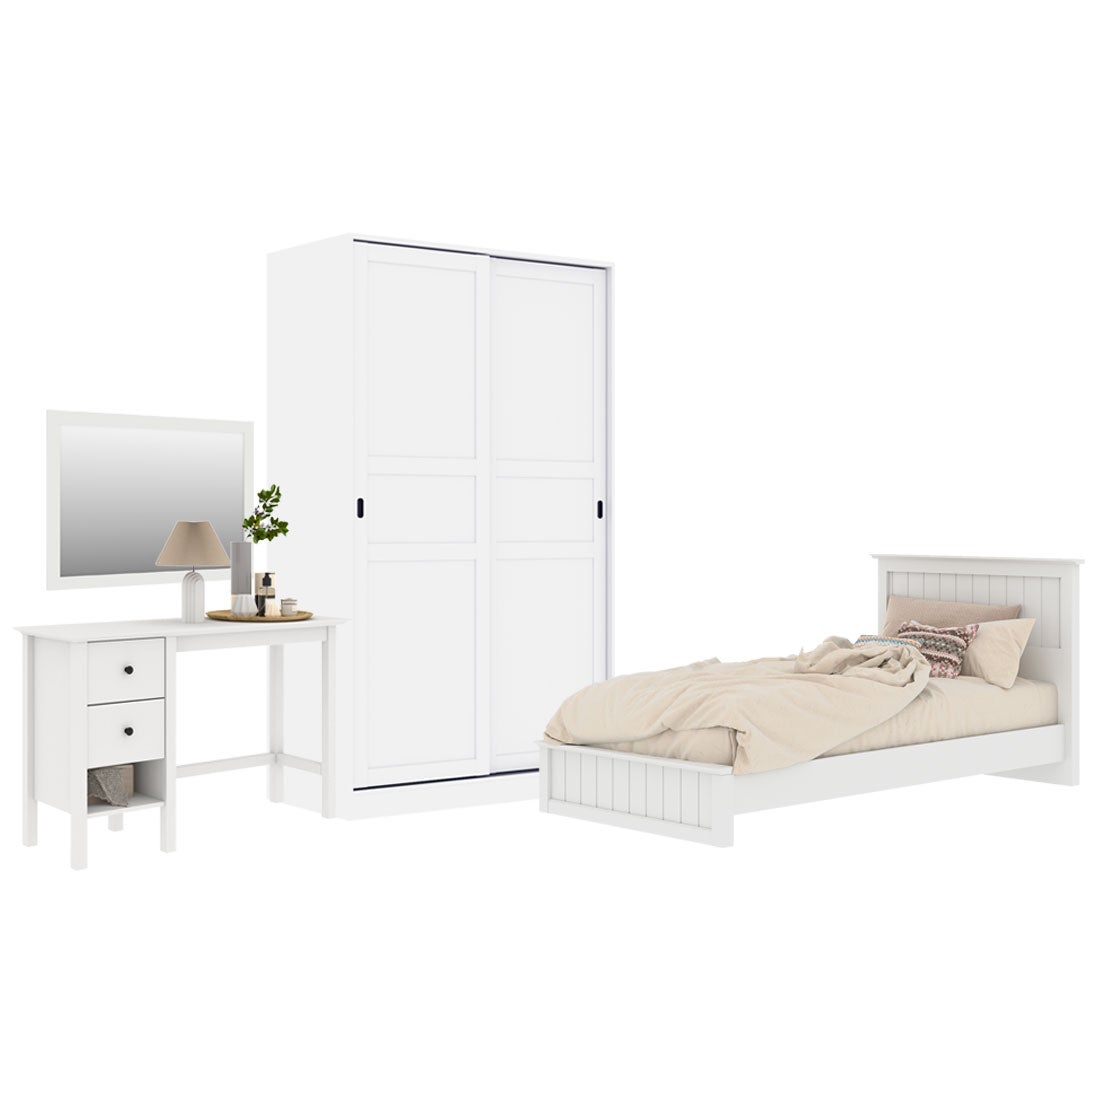 ชุดห้องนอน ขนาด 3.5 ฟุต รุ่น Moneta & ตู้บานเเลื่อน 120 ซม. สีขาว01